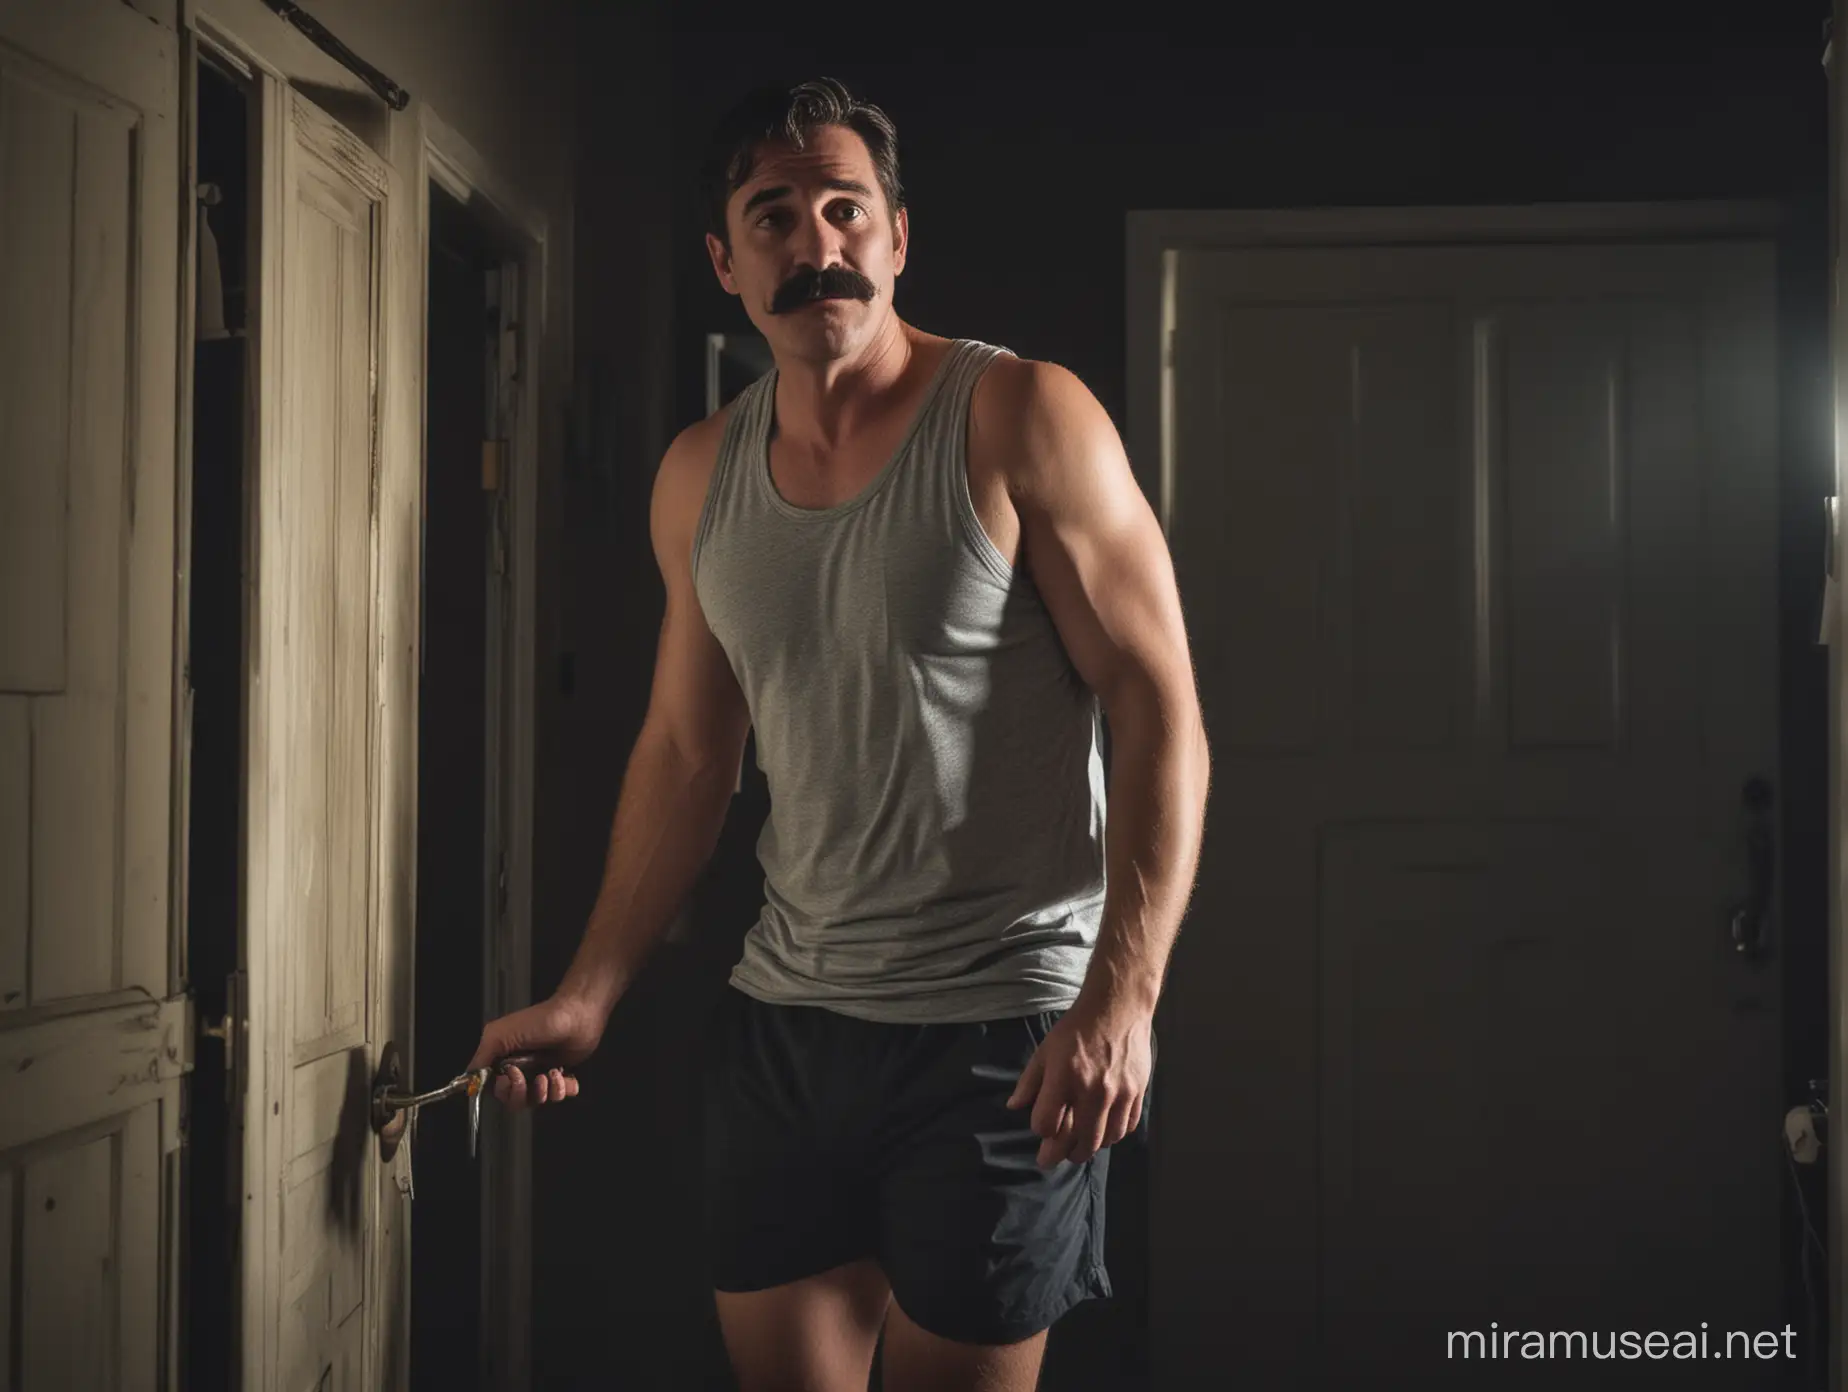 Un hombre adulto con bigote, camiseta de tirantes, shorts y con sueño saliendo de su habitación de una casa oscura en la noche